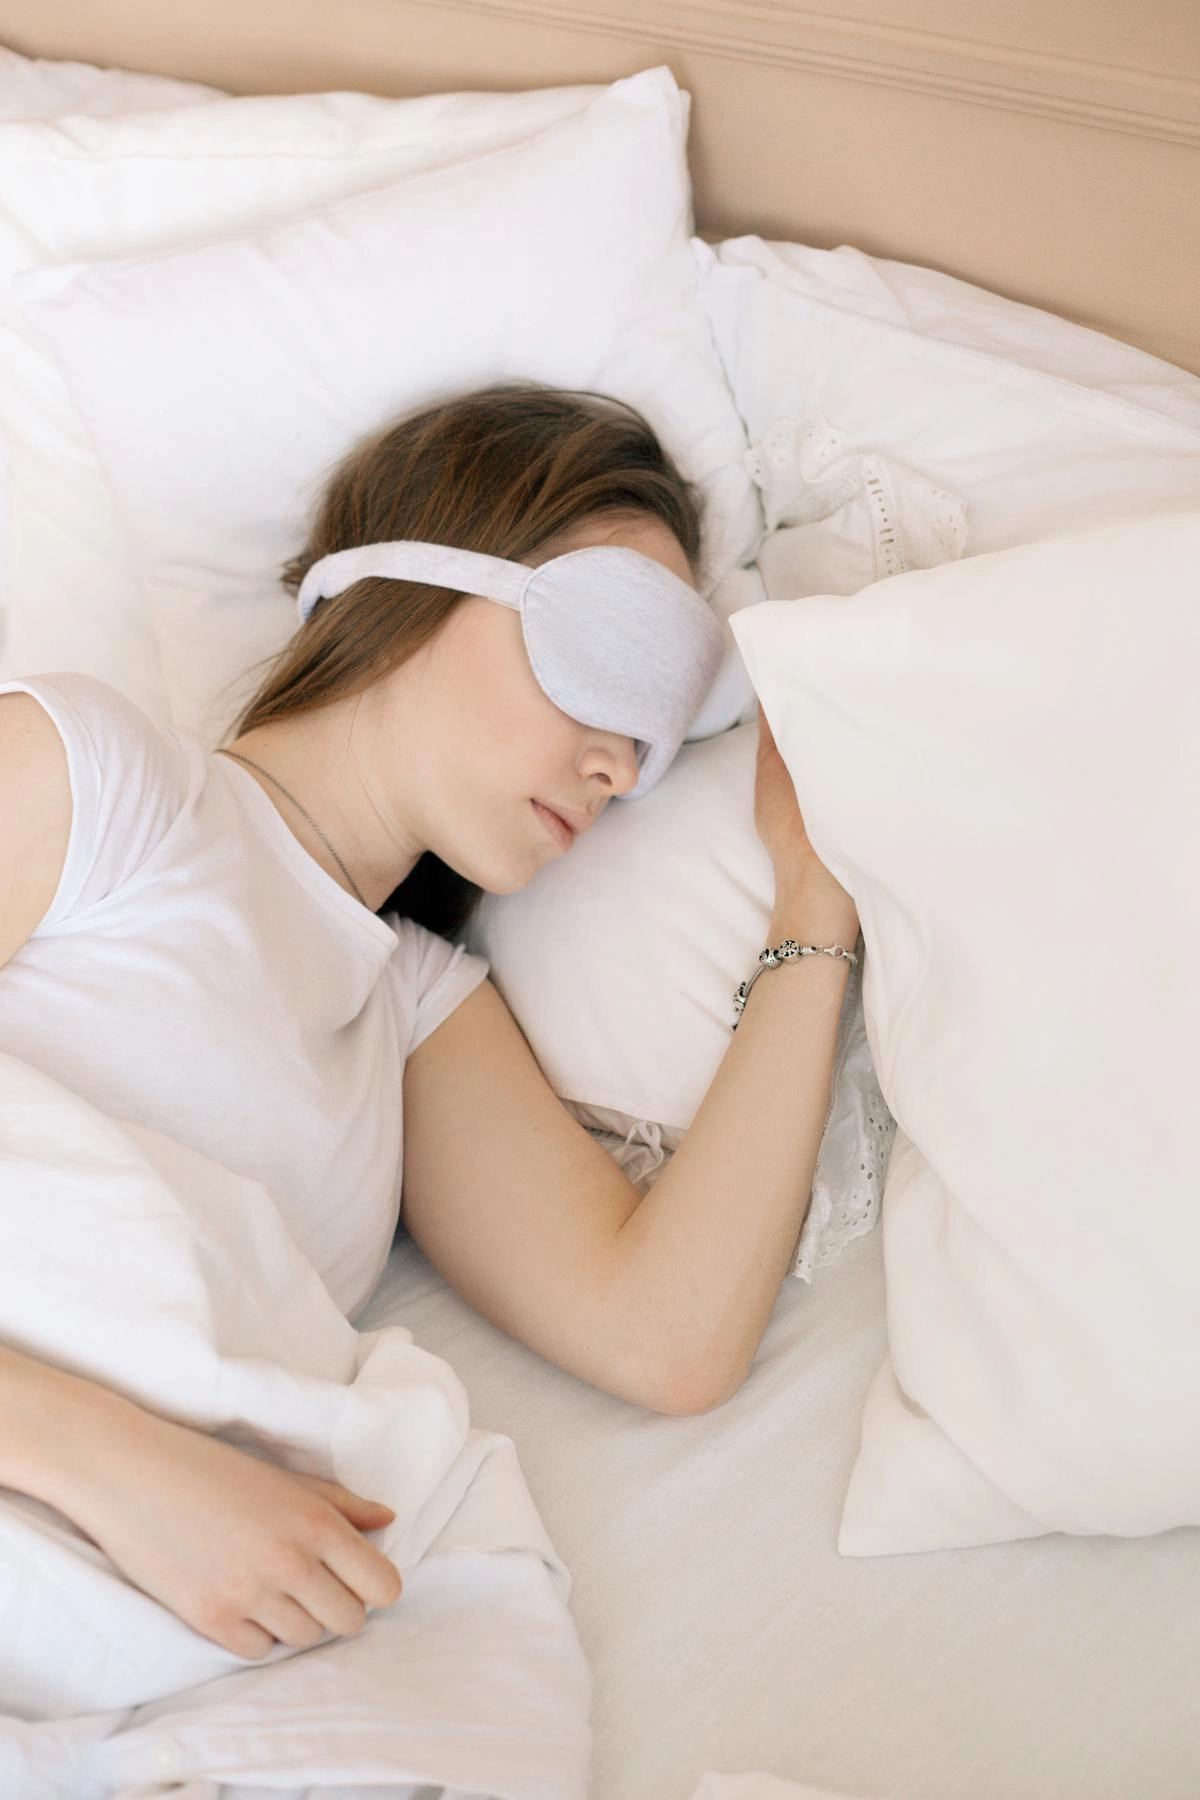  «30 минут сна днем позволяют частично компенсировать нехватку ночного отдыха».